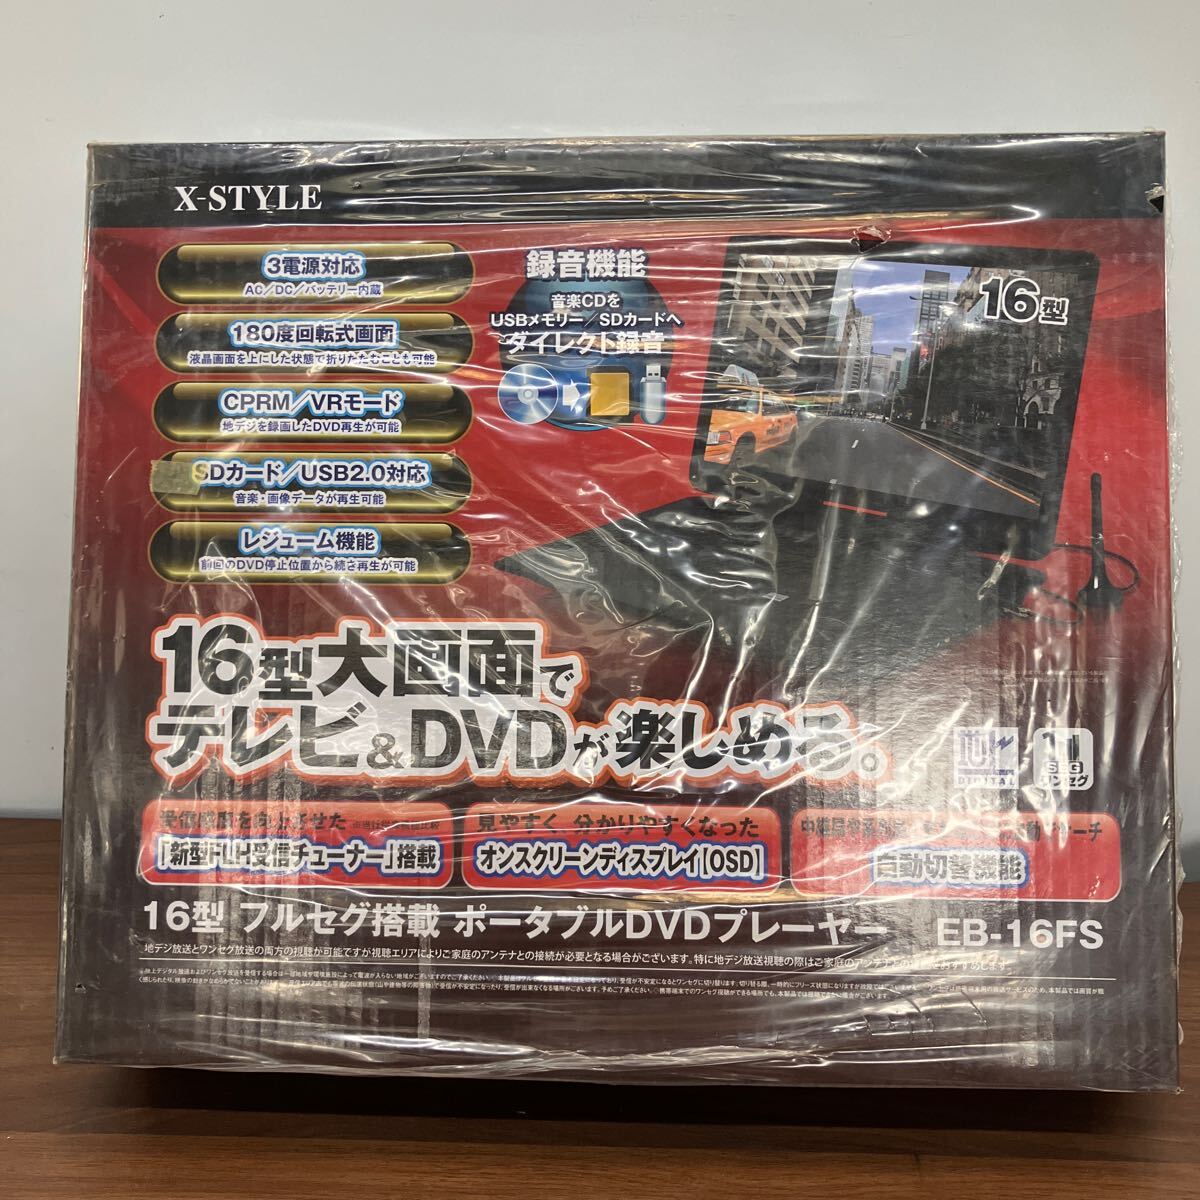 X-STYLE 16 type Full seg installing portable DVD player DVD&TV digital broadcasting 1 SEG tv black new goods unopened 